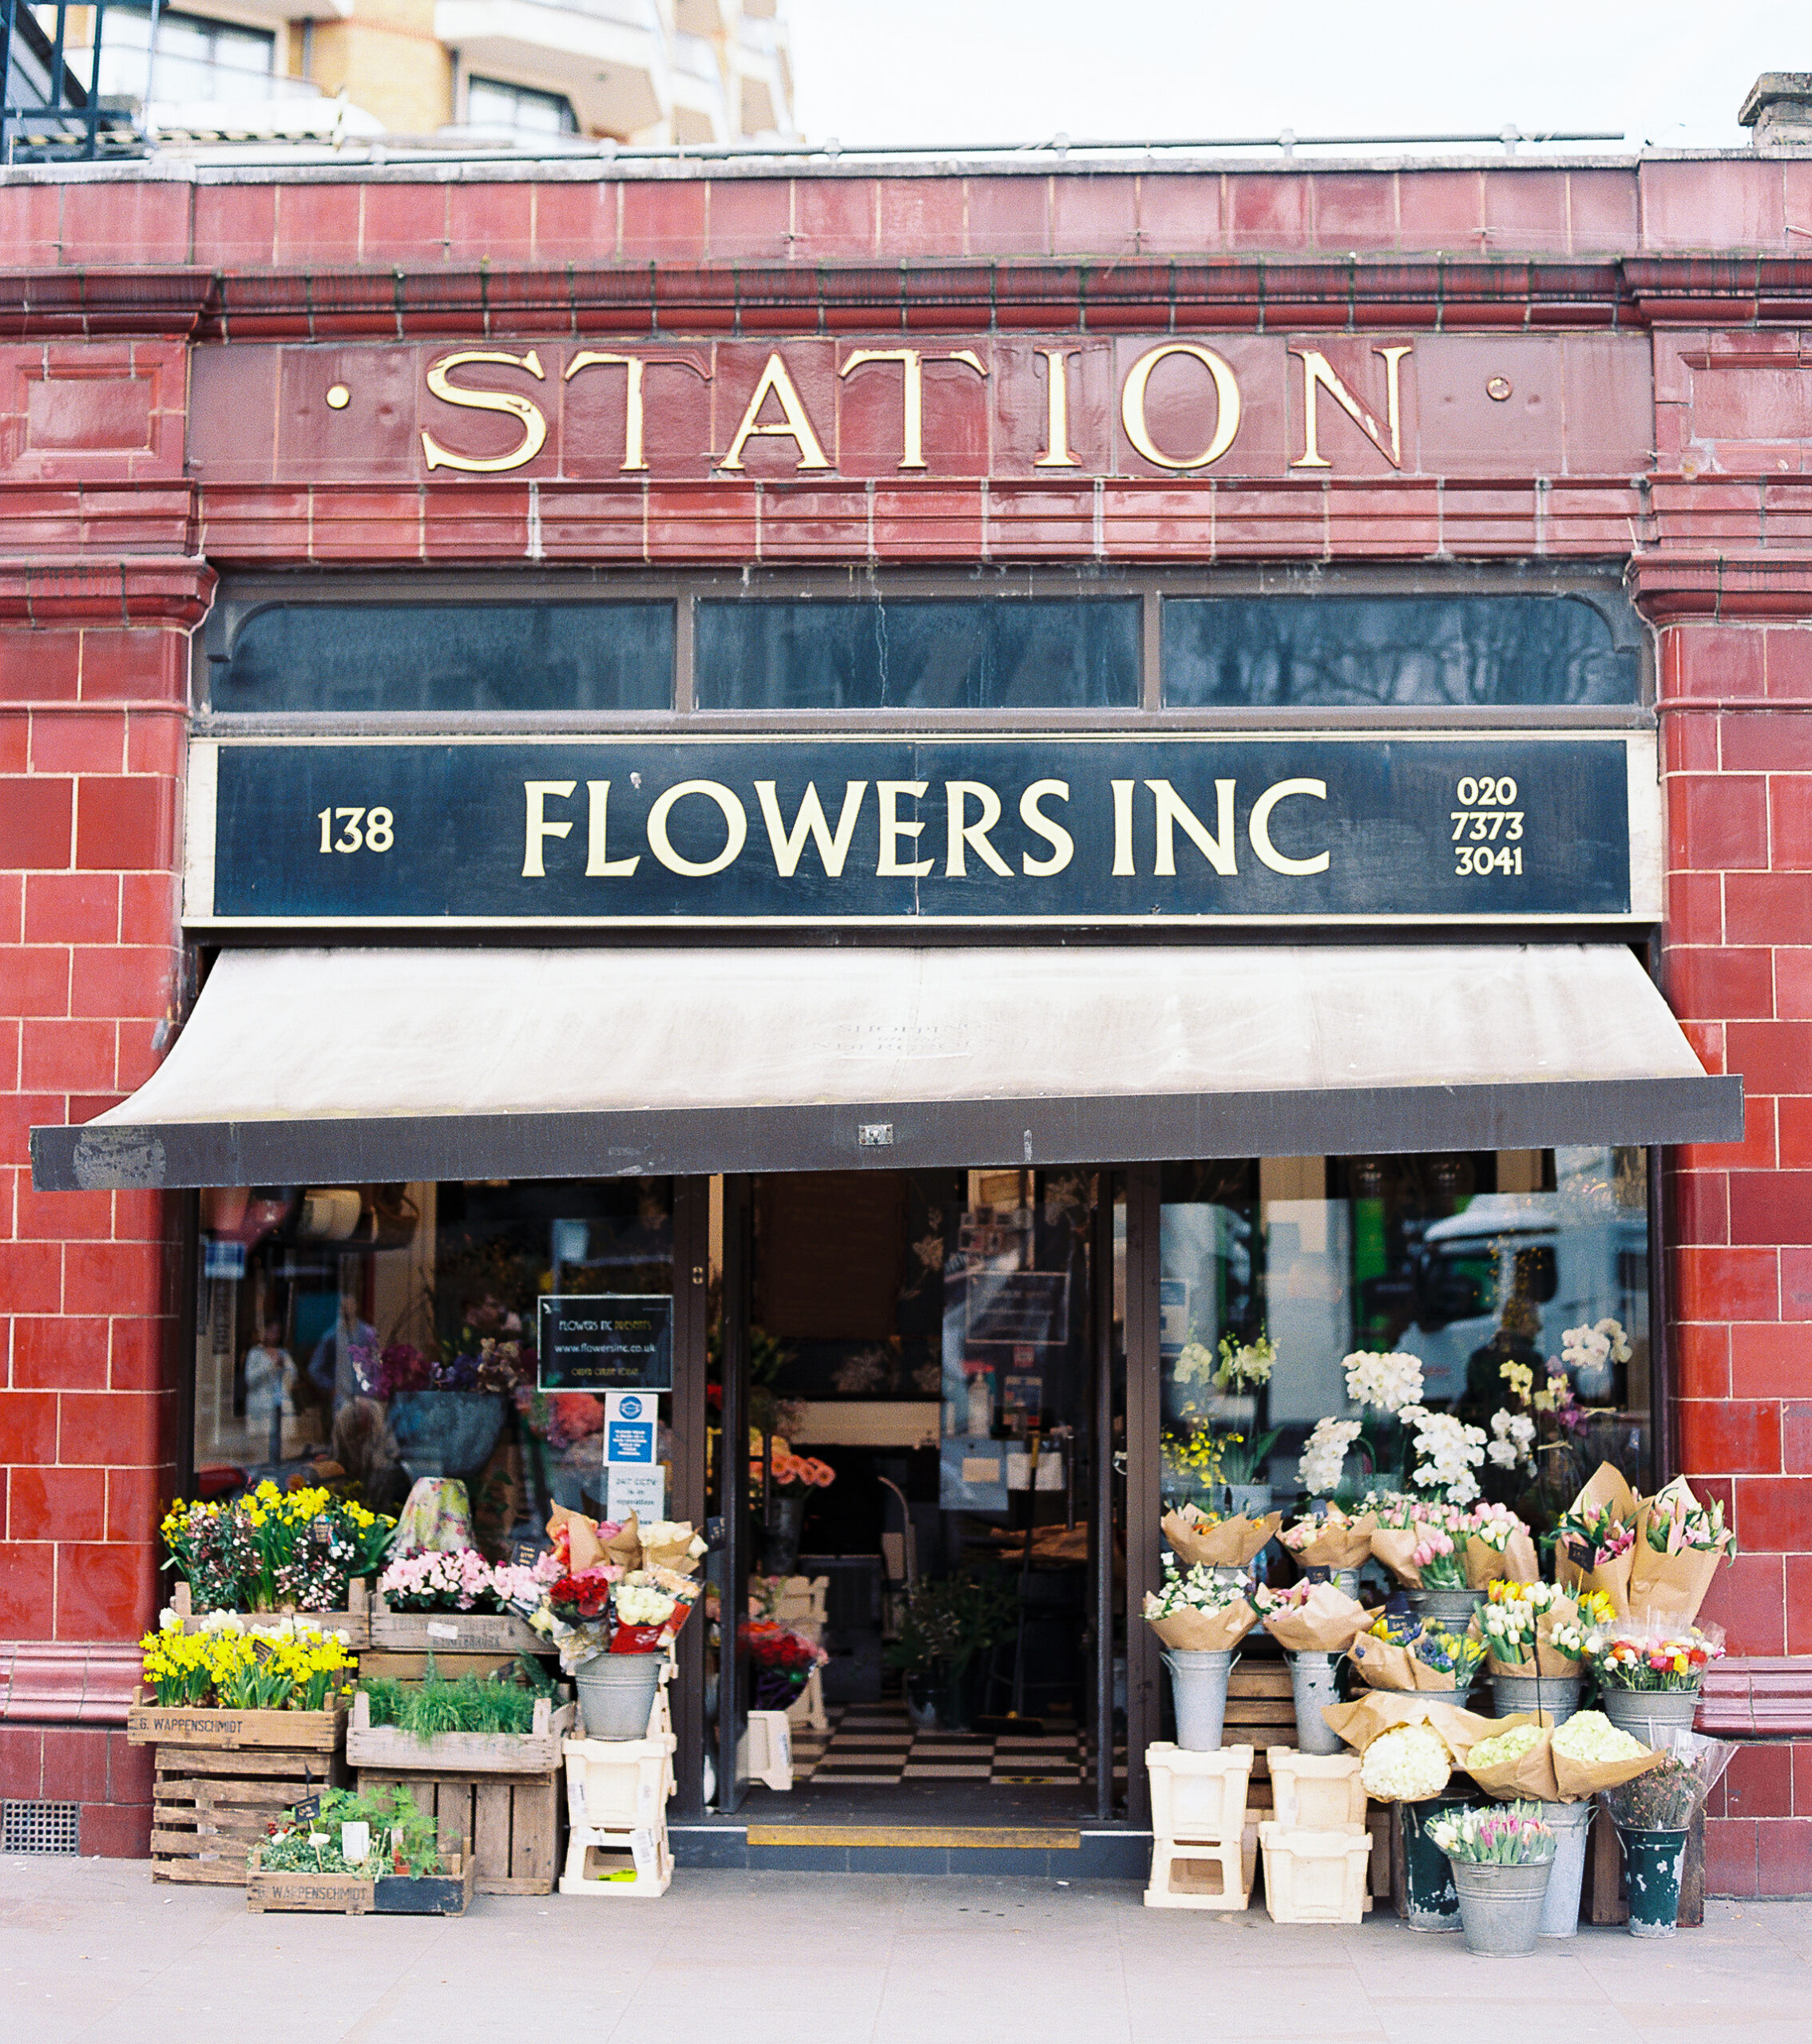 Flower shop in London